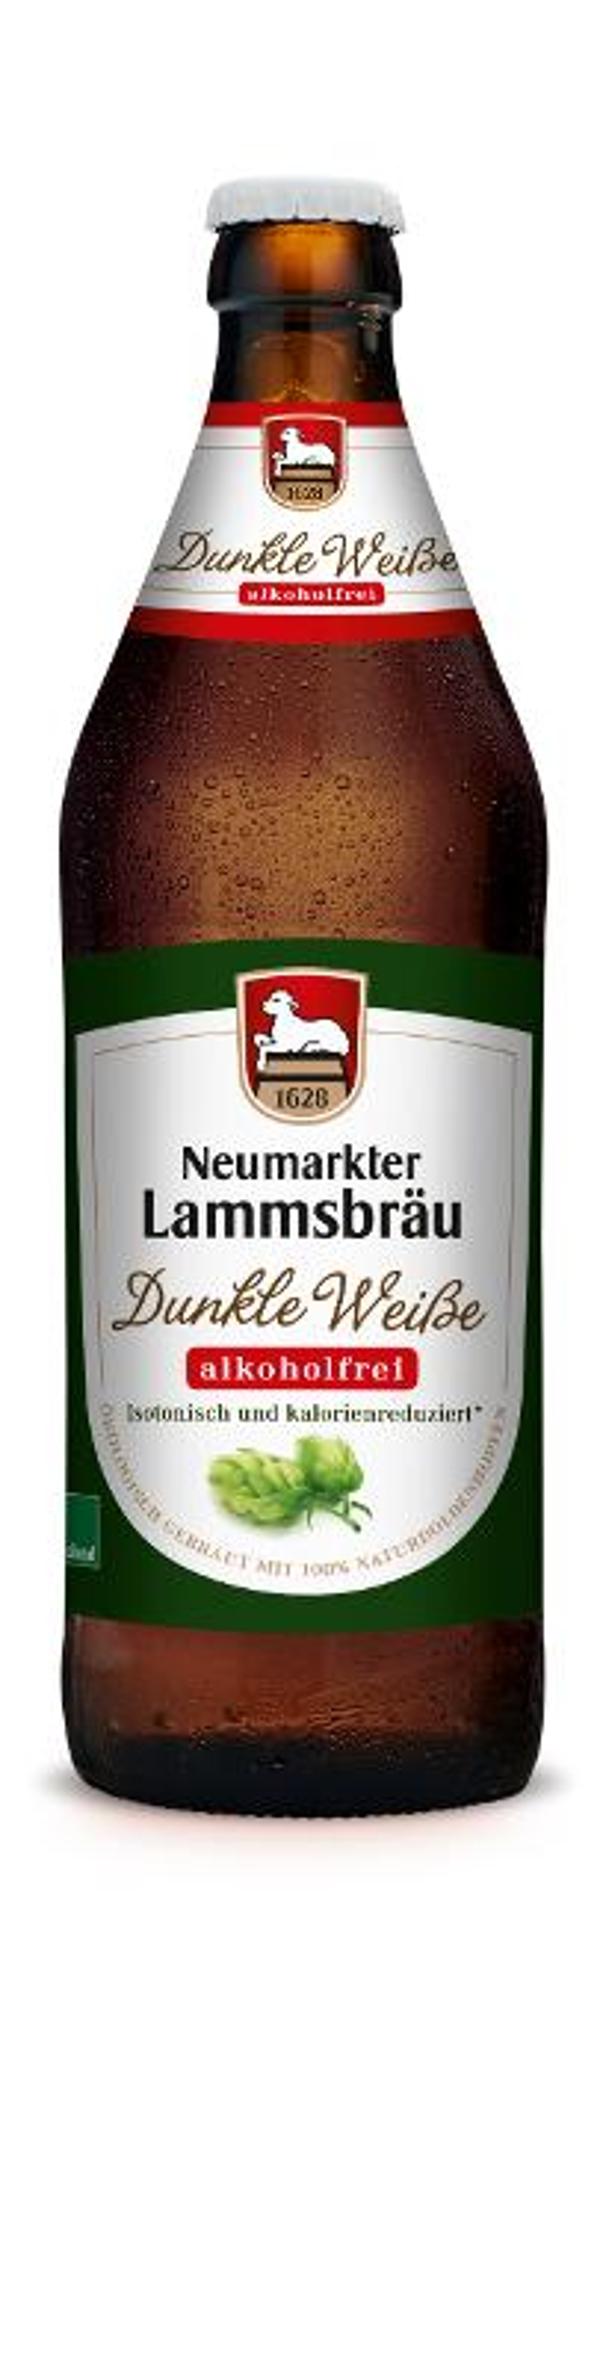 Produktfoto zu 10er Kasten Lammsbräu Dunkle Weisse, alkoholfrei